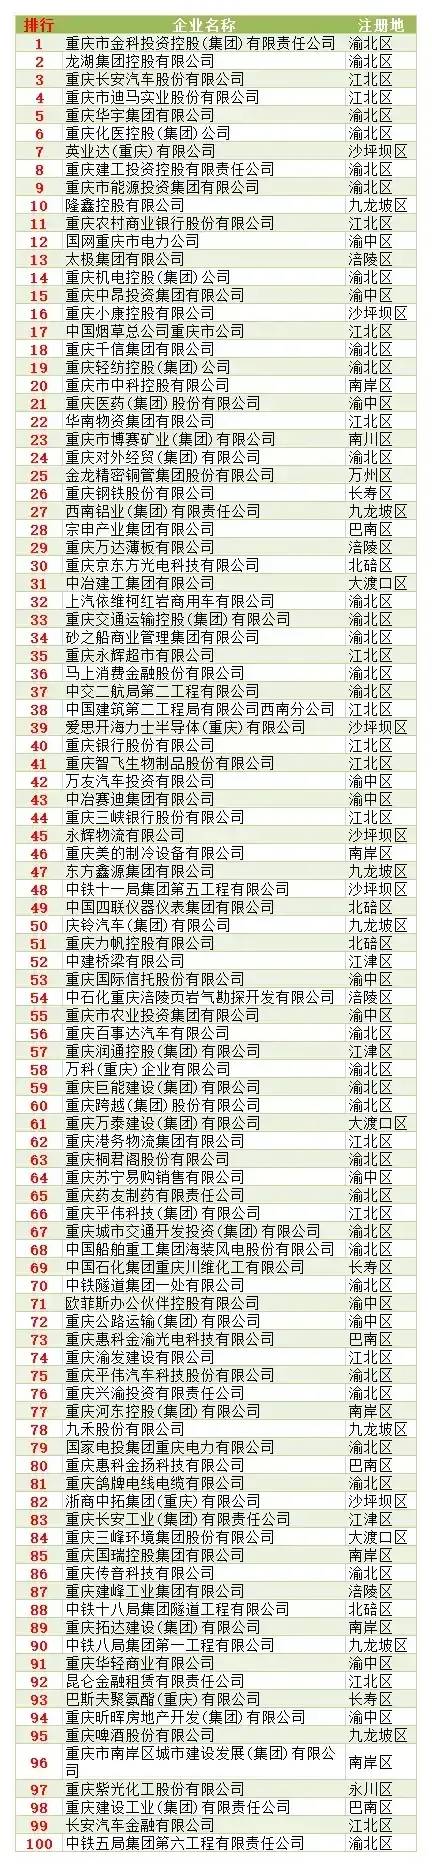 重庆餐饮排行榜_万州加油!2020年重庆企业百强排行榜!